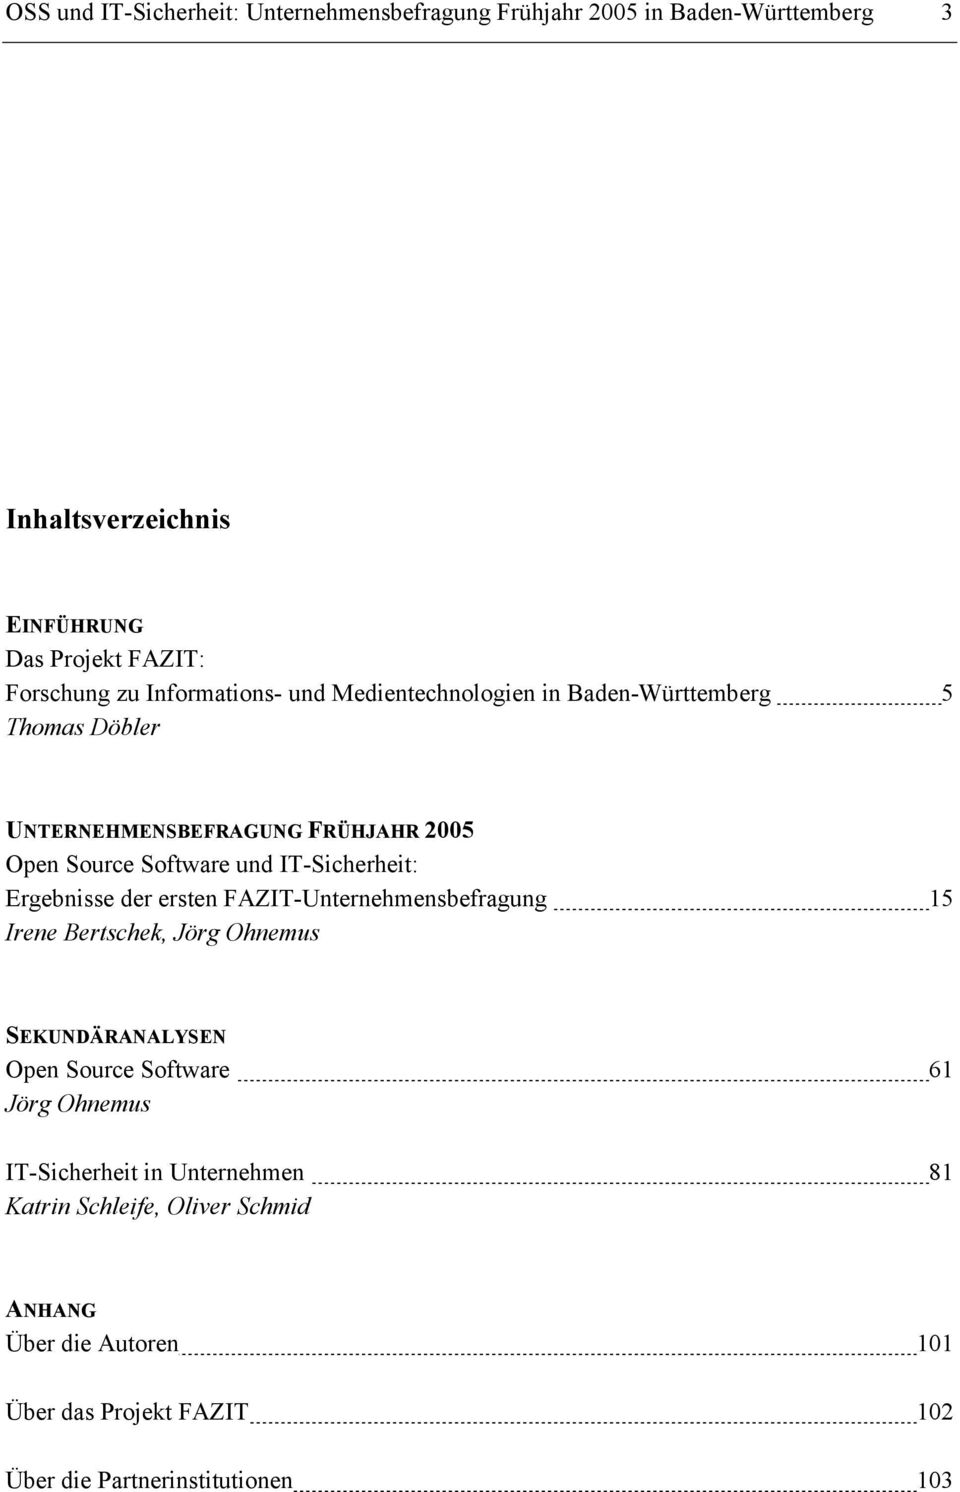 IT-Sicherheit: Ergebnisse der ersten FAZIT-Unternehmensbefragung 15 Irene Bertschek, Jörg Ohnemus SEKUNDÄRANALYSEN Open Source Software 61 Jörg